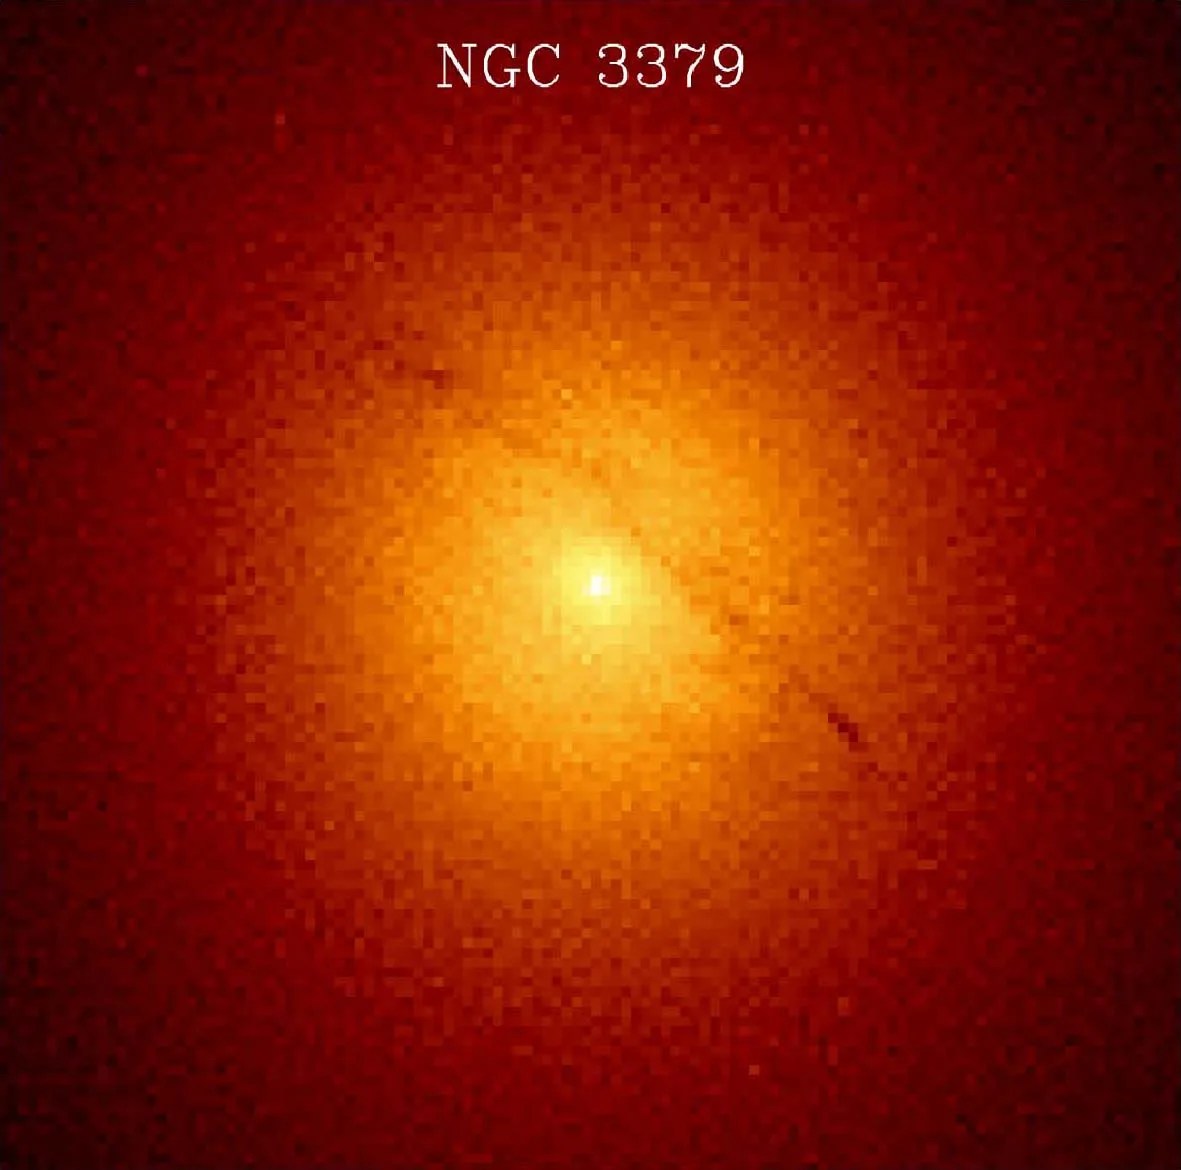 M105 (aka NGC 3379)